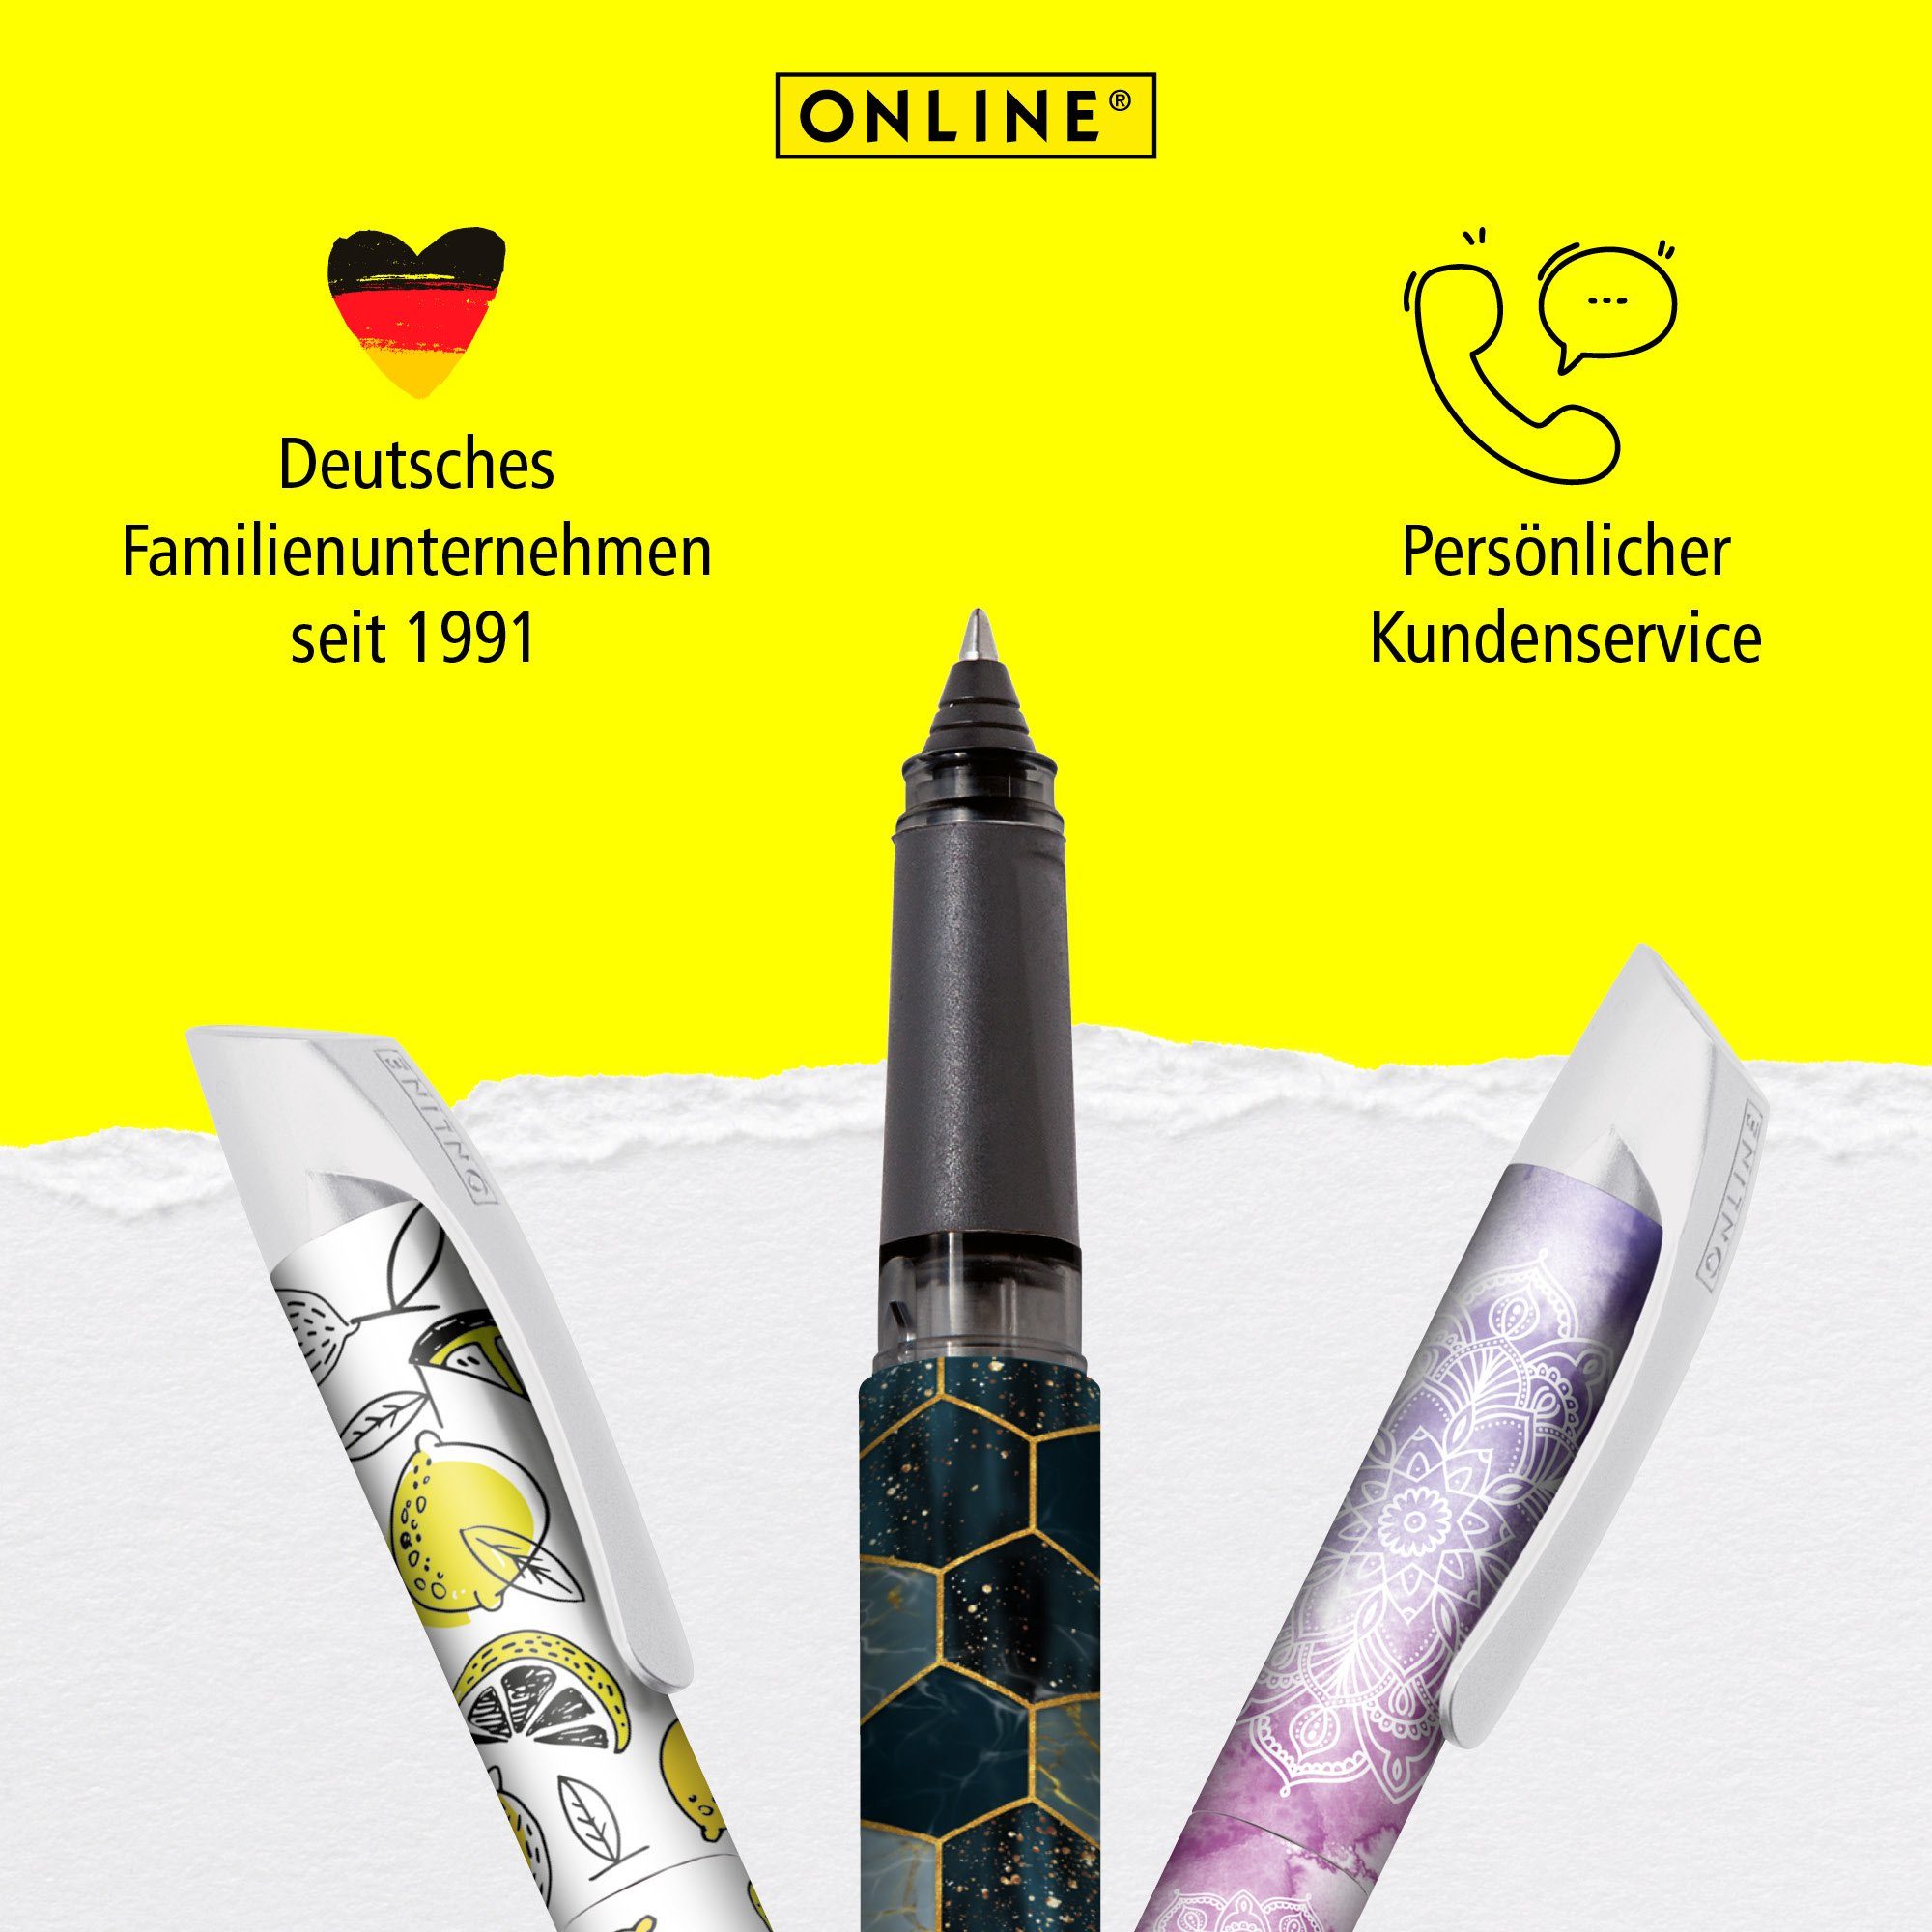 die Hexagon Online Pen Deutschland Tintenpatronen-Rollerball, ergonomisch, für Tintenroller Schule, hergestellt ideal in Campus